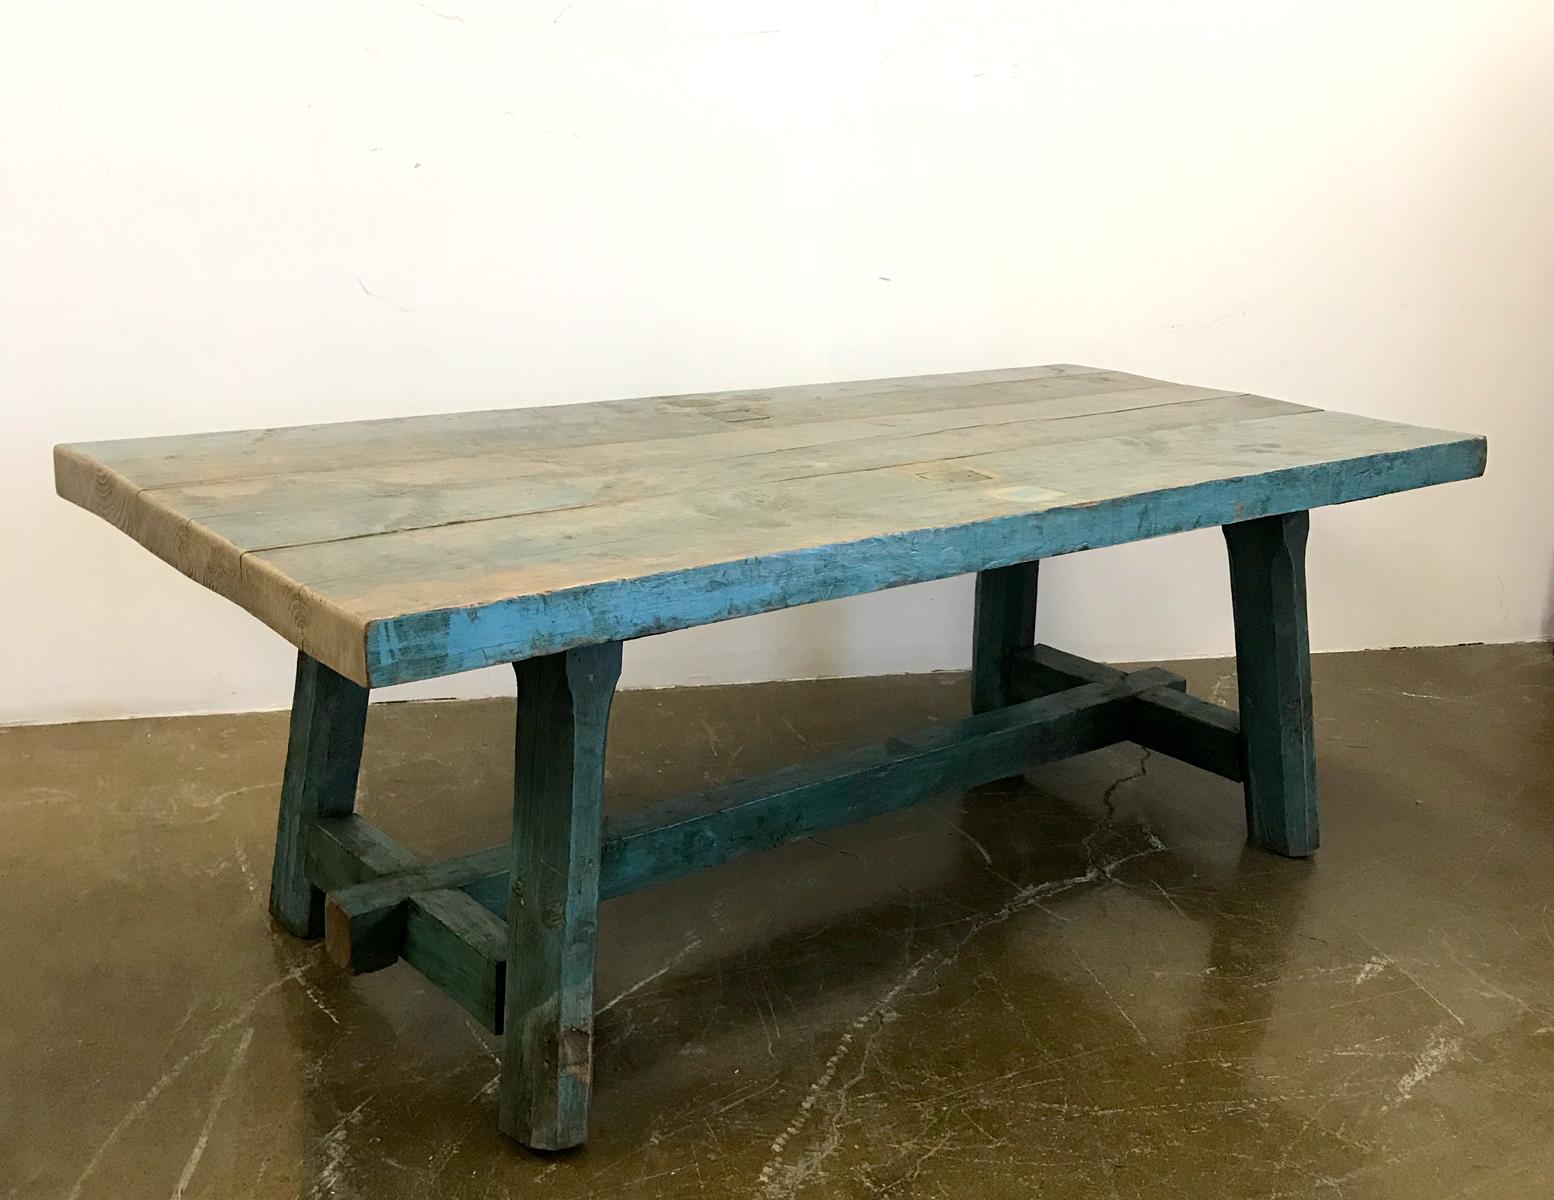 Cette table a été transformée d'une longue console étroite en une fabuleuse table de ferme rustique. Peinture originale partout. Construction robuste. Les planches ont une largeur de 14,25 pouces et une épaisseur de 3 pouces. Une table de ferme